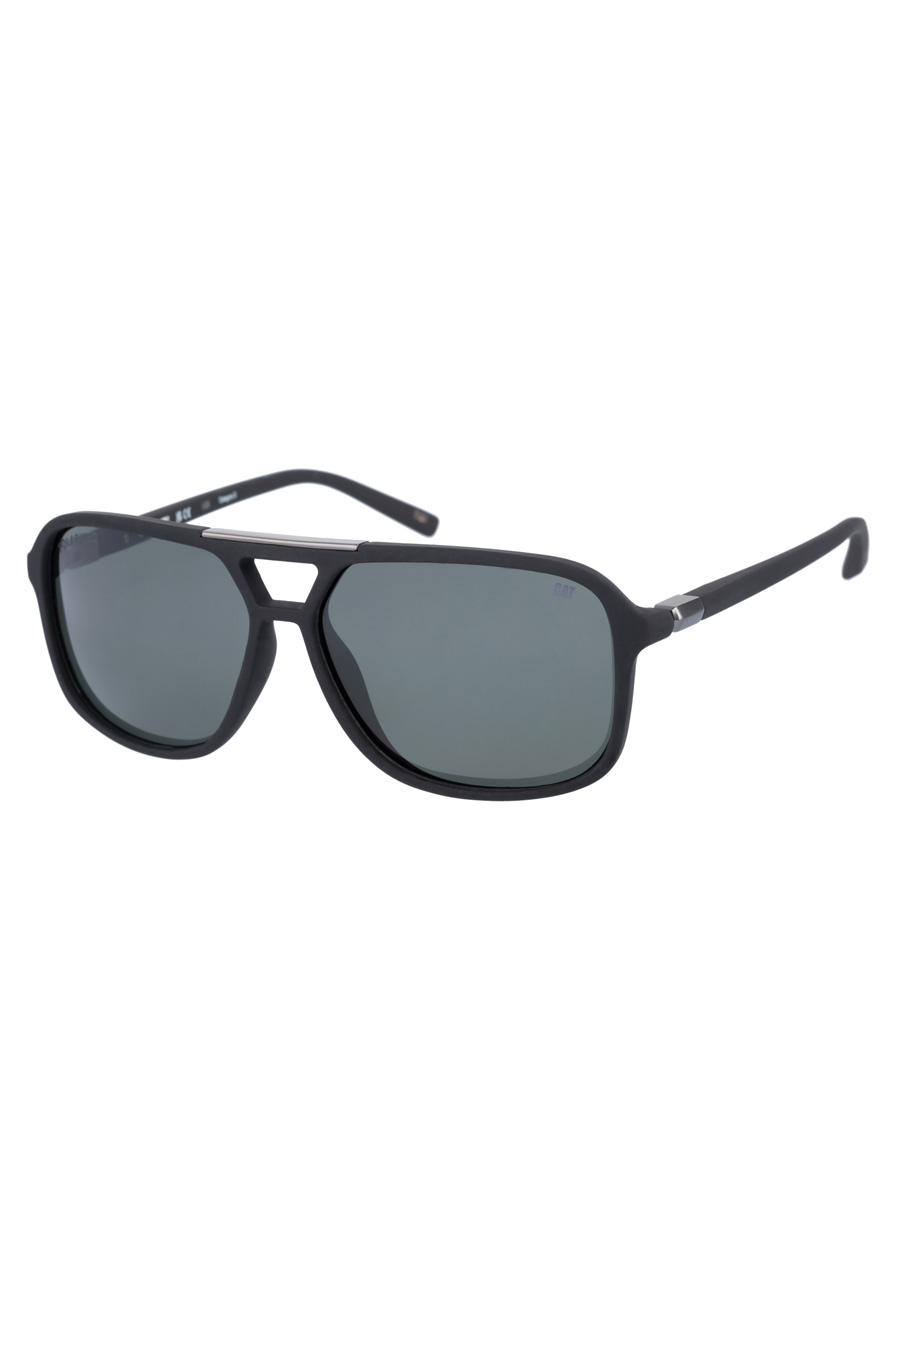 Sunglasses CAT CPS-8505-104P